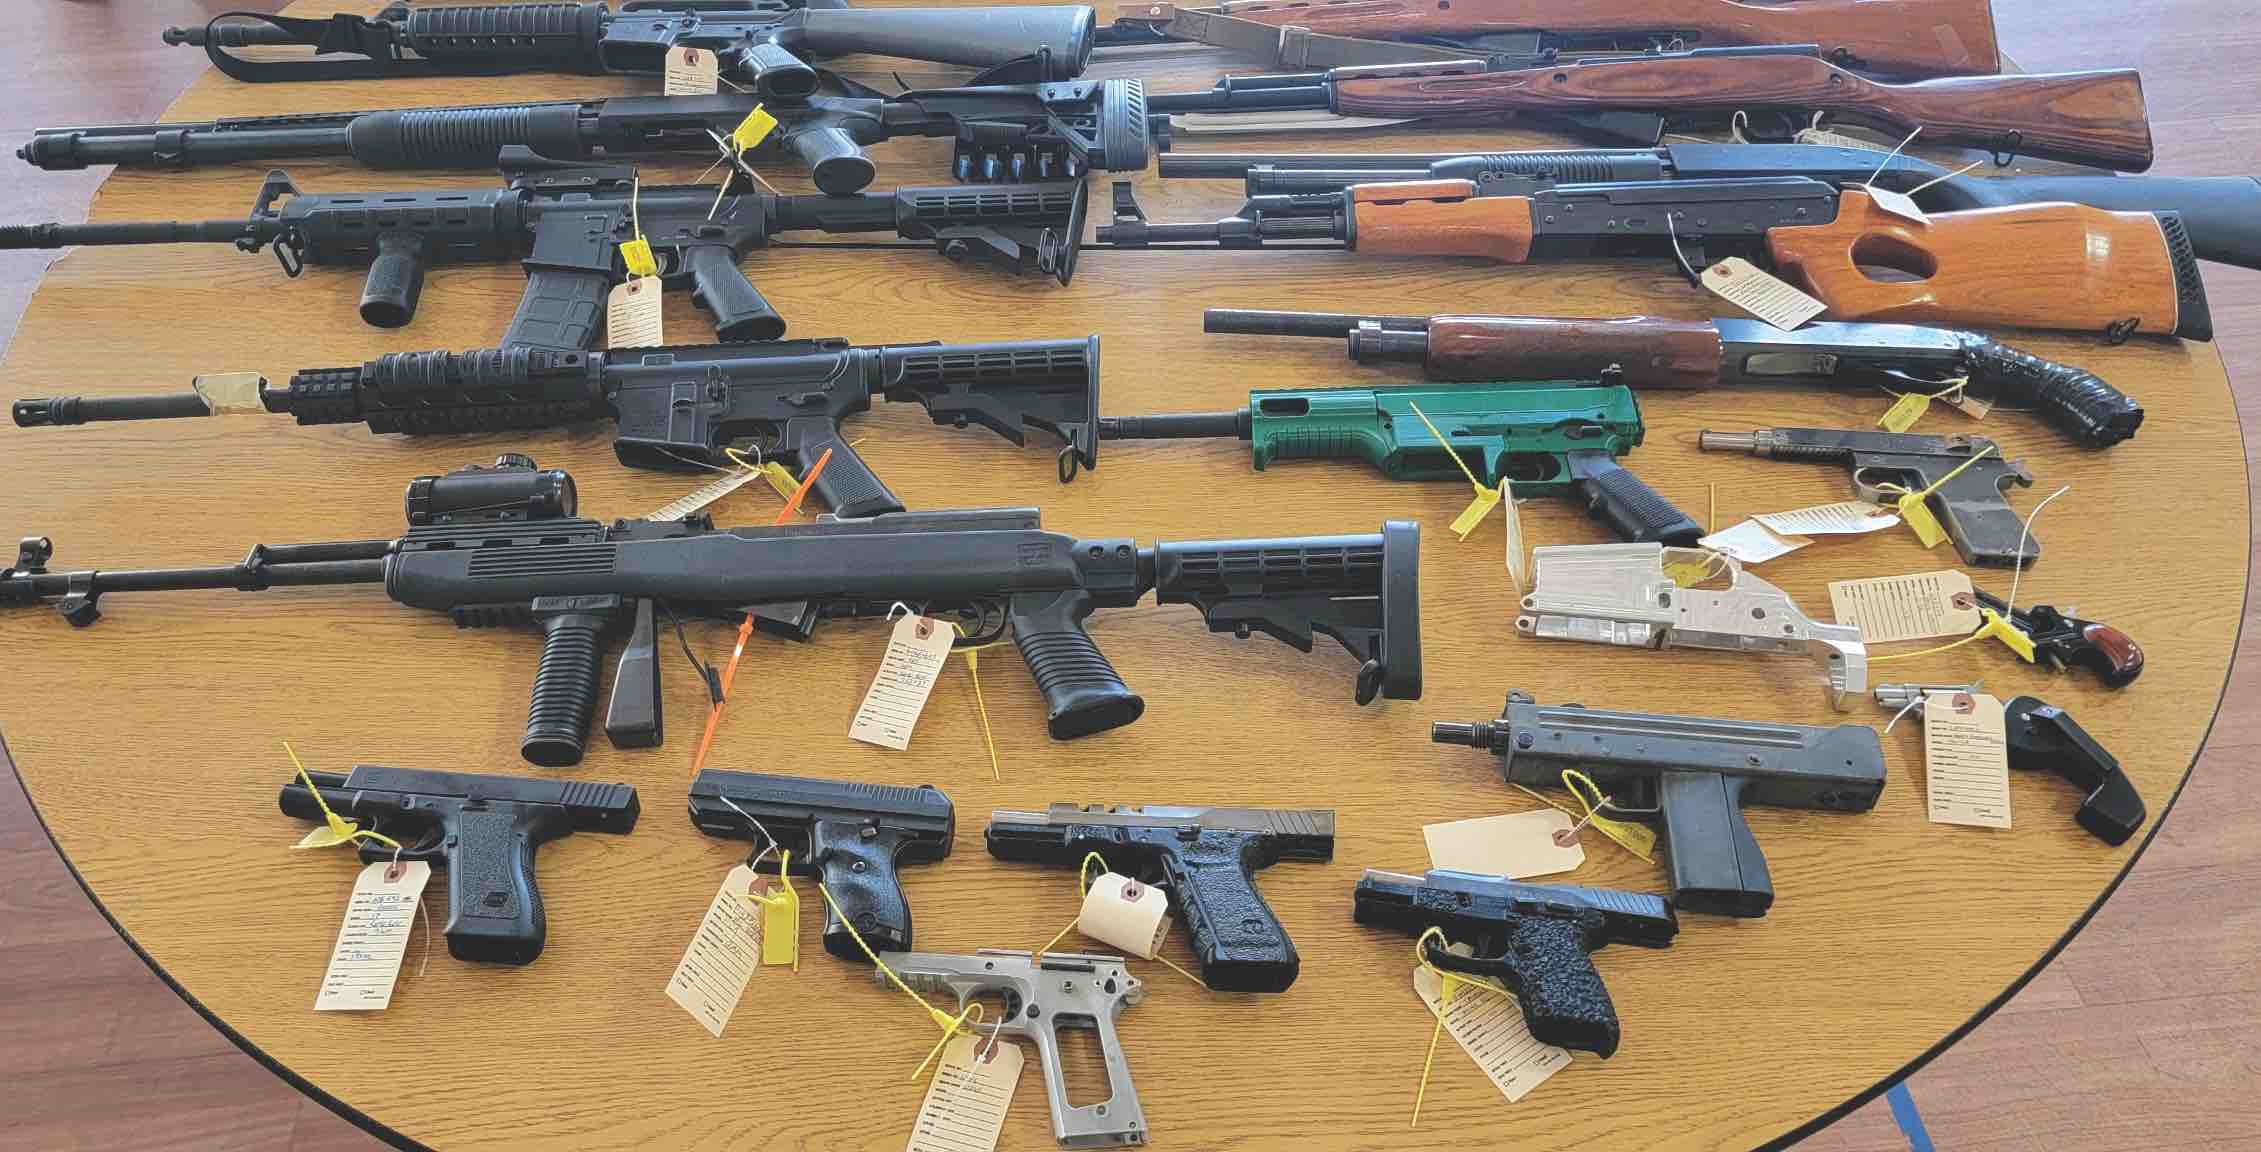 400+ guns turned in as part of firearm 'buyback' program Los Gatan